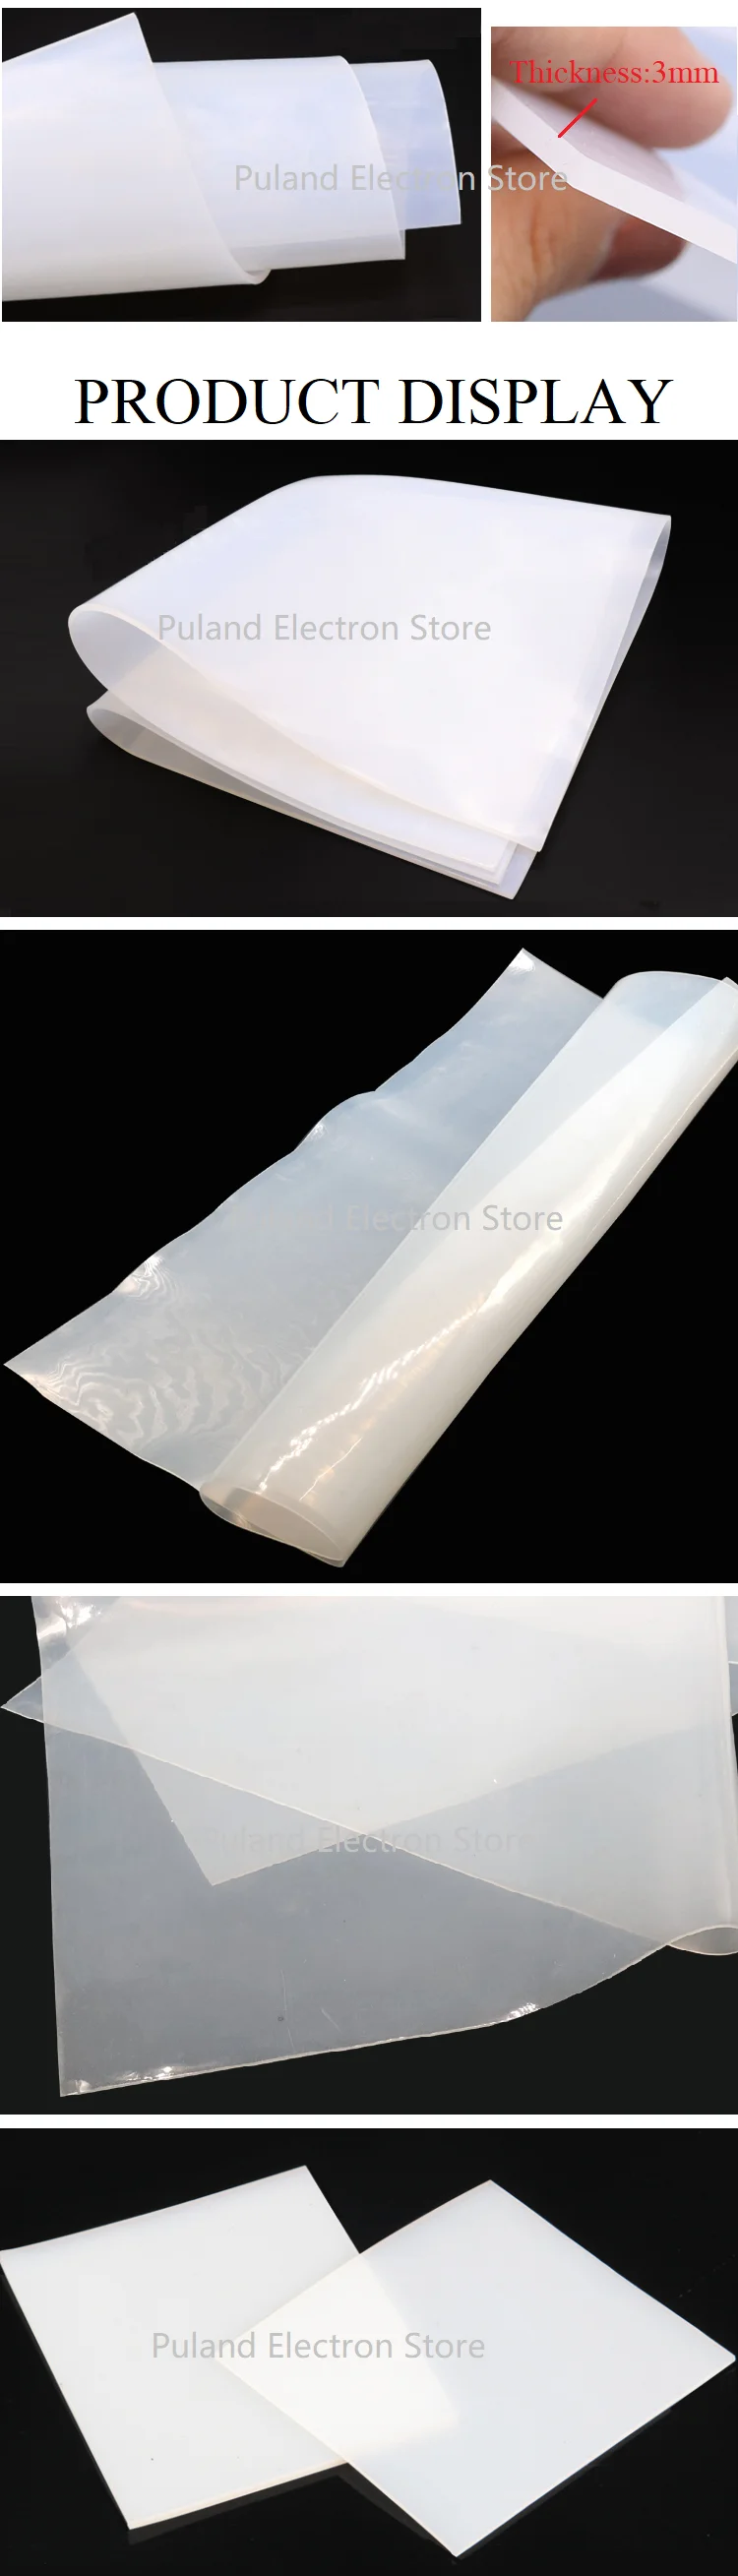 6 мм лист силиконовой резины 1 м x 1 м ширина Подушка уплотнительная пленка пластина коврик квадратная плоская прокладка теплостойкая молочно-белая